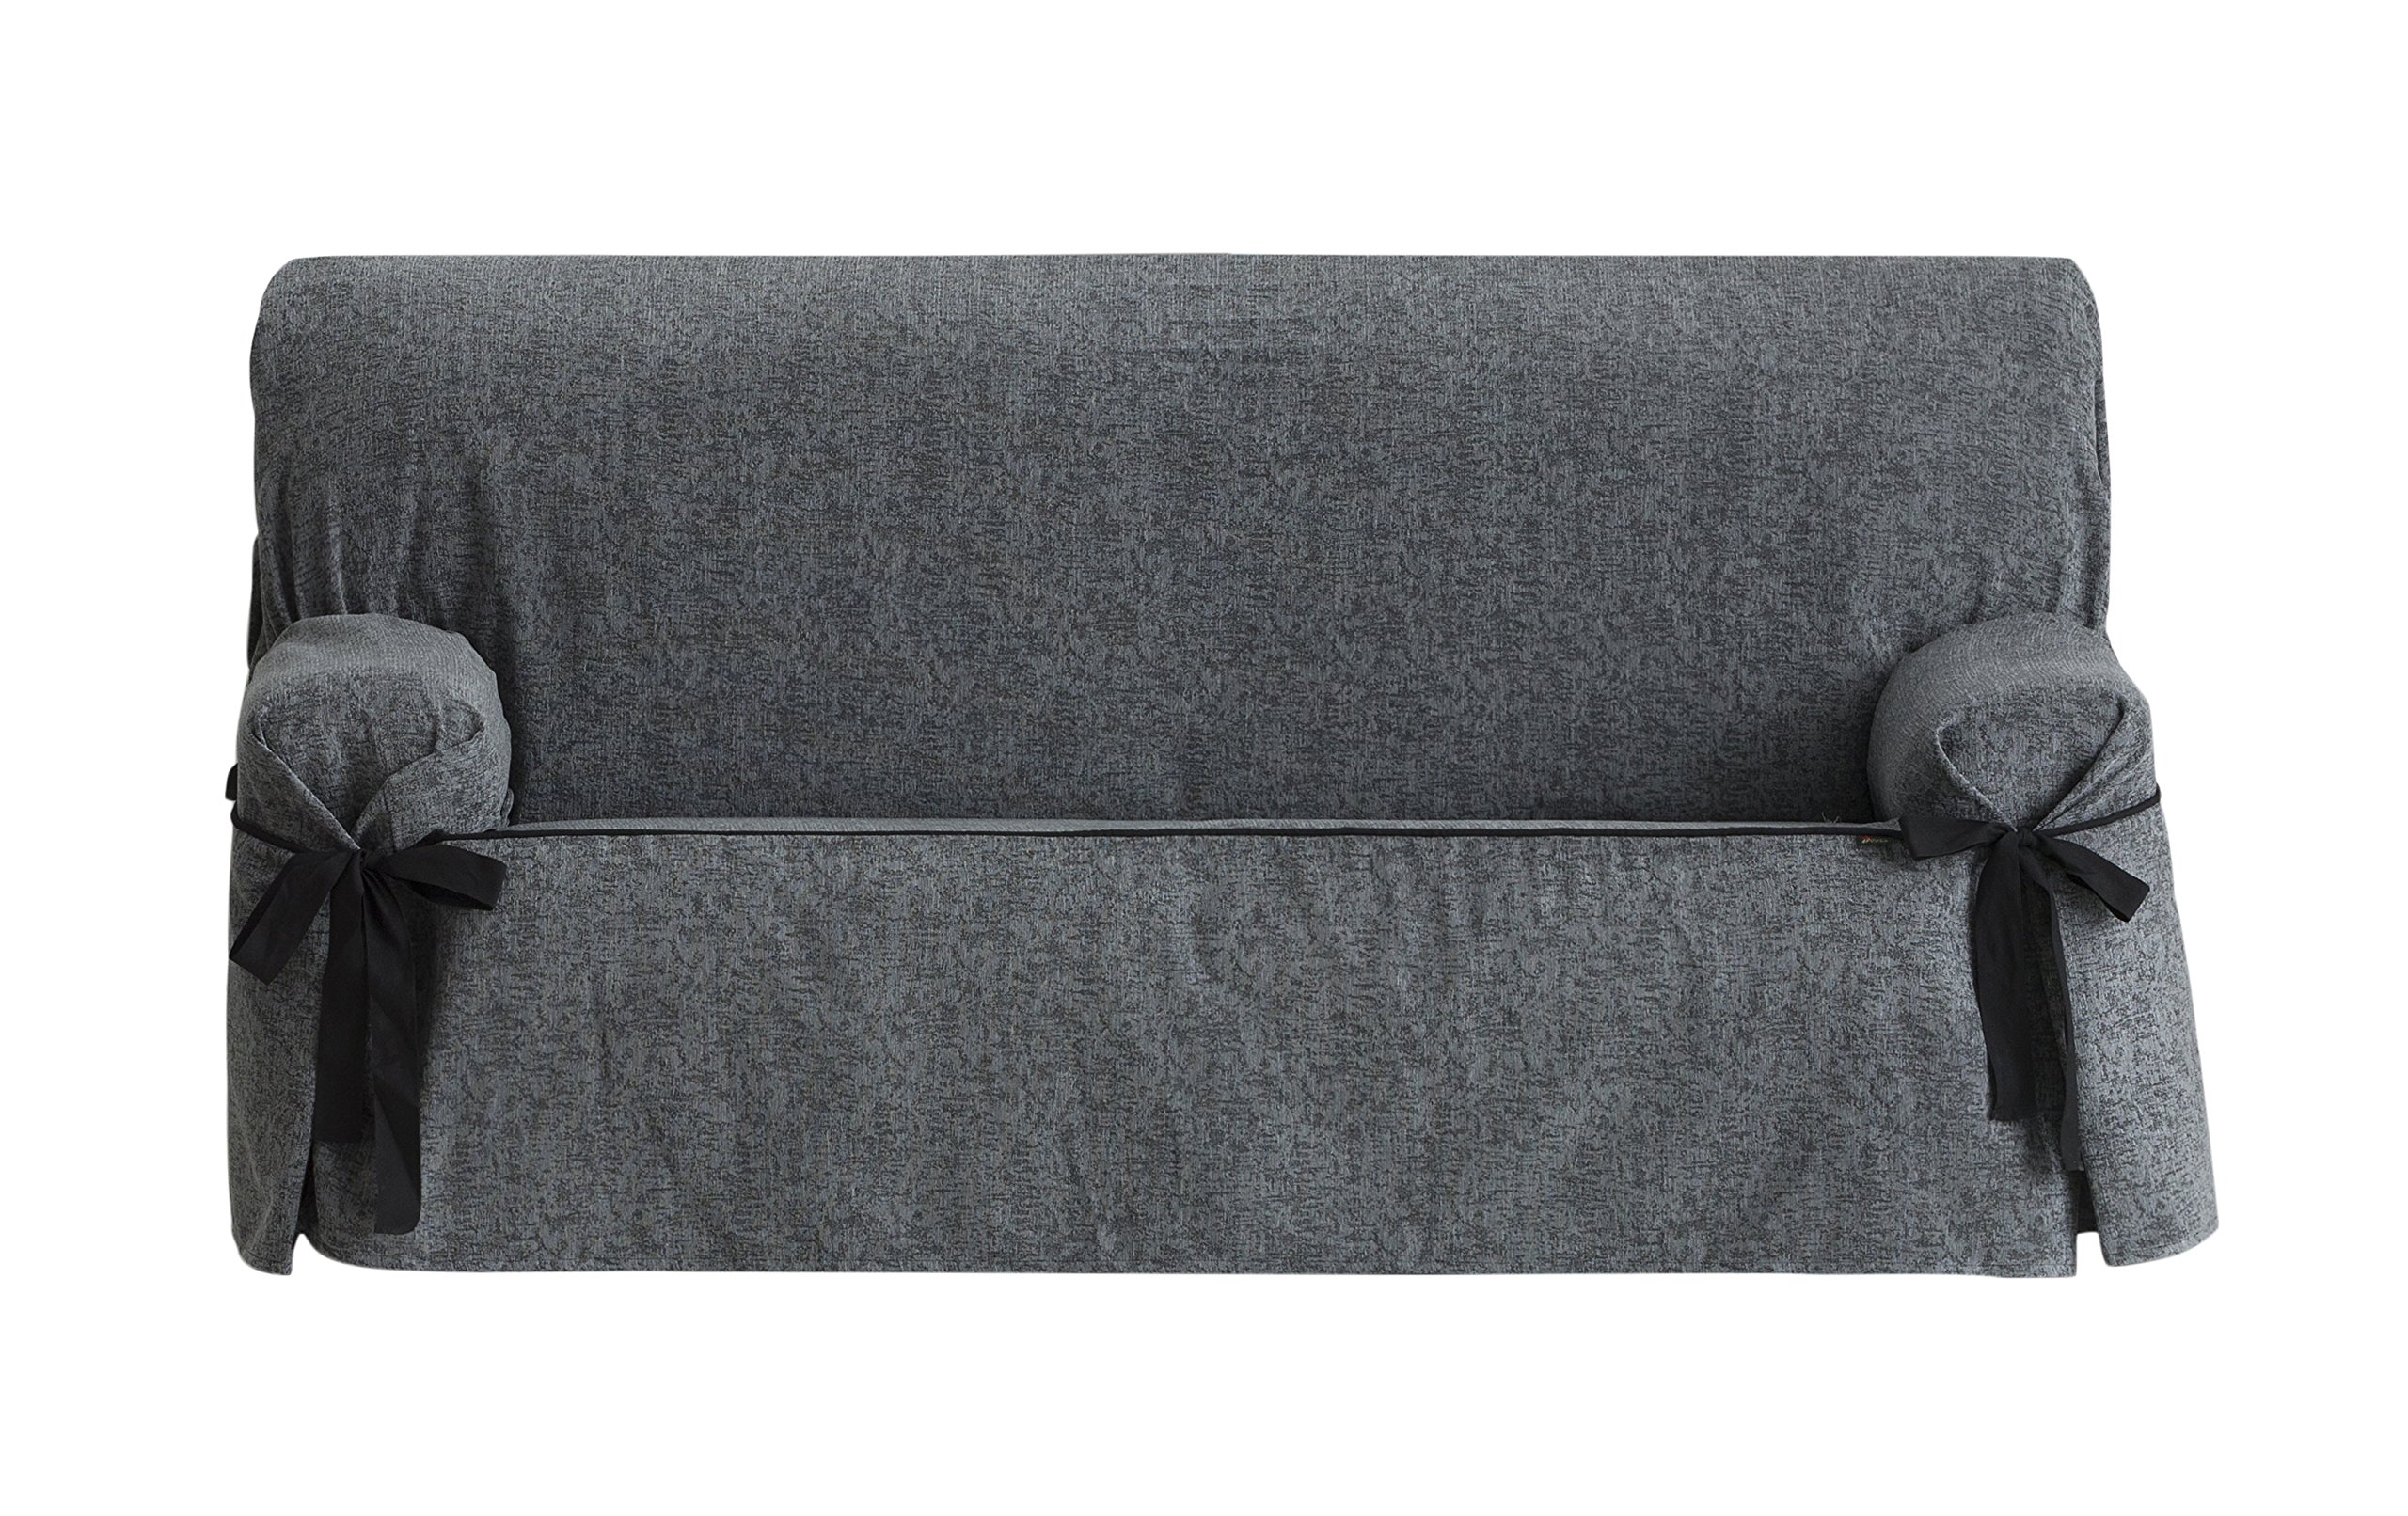 Eysa Dream nicht elastisch mit krawatten sofa überwurf 2 sitzer, Chenille, Grau (06-grau),70 x 110 x 180 cm, 1 Einheit